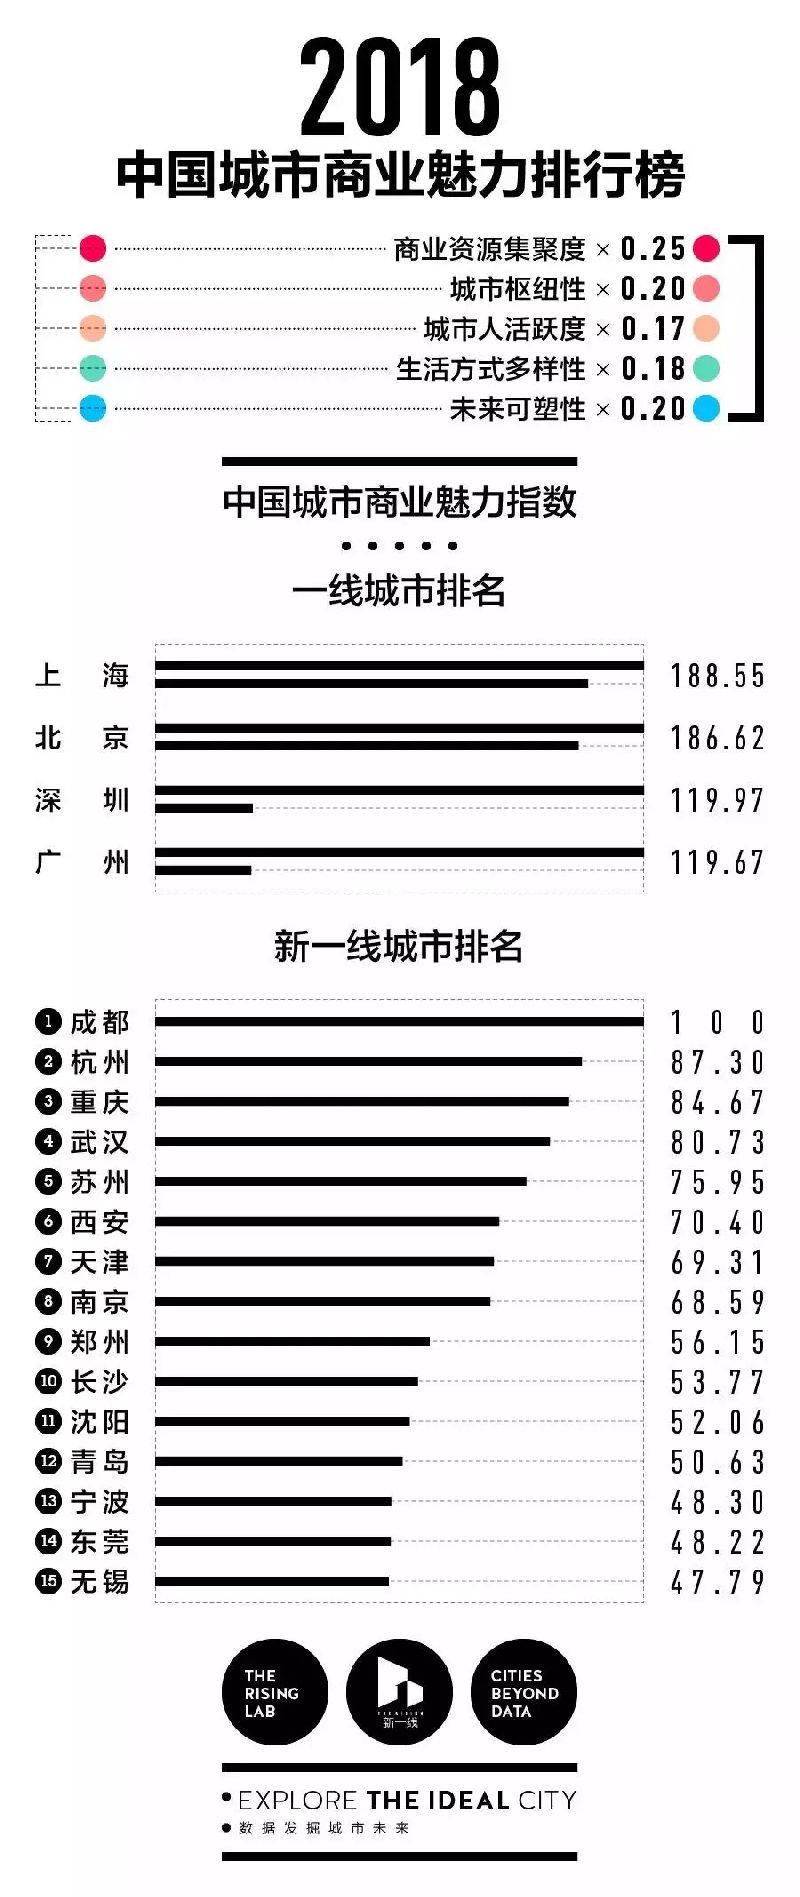 2018年中国城市分级完整名单(一线+新一线+二